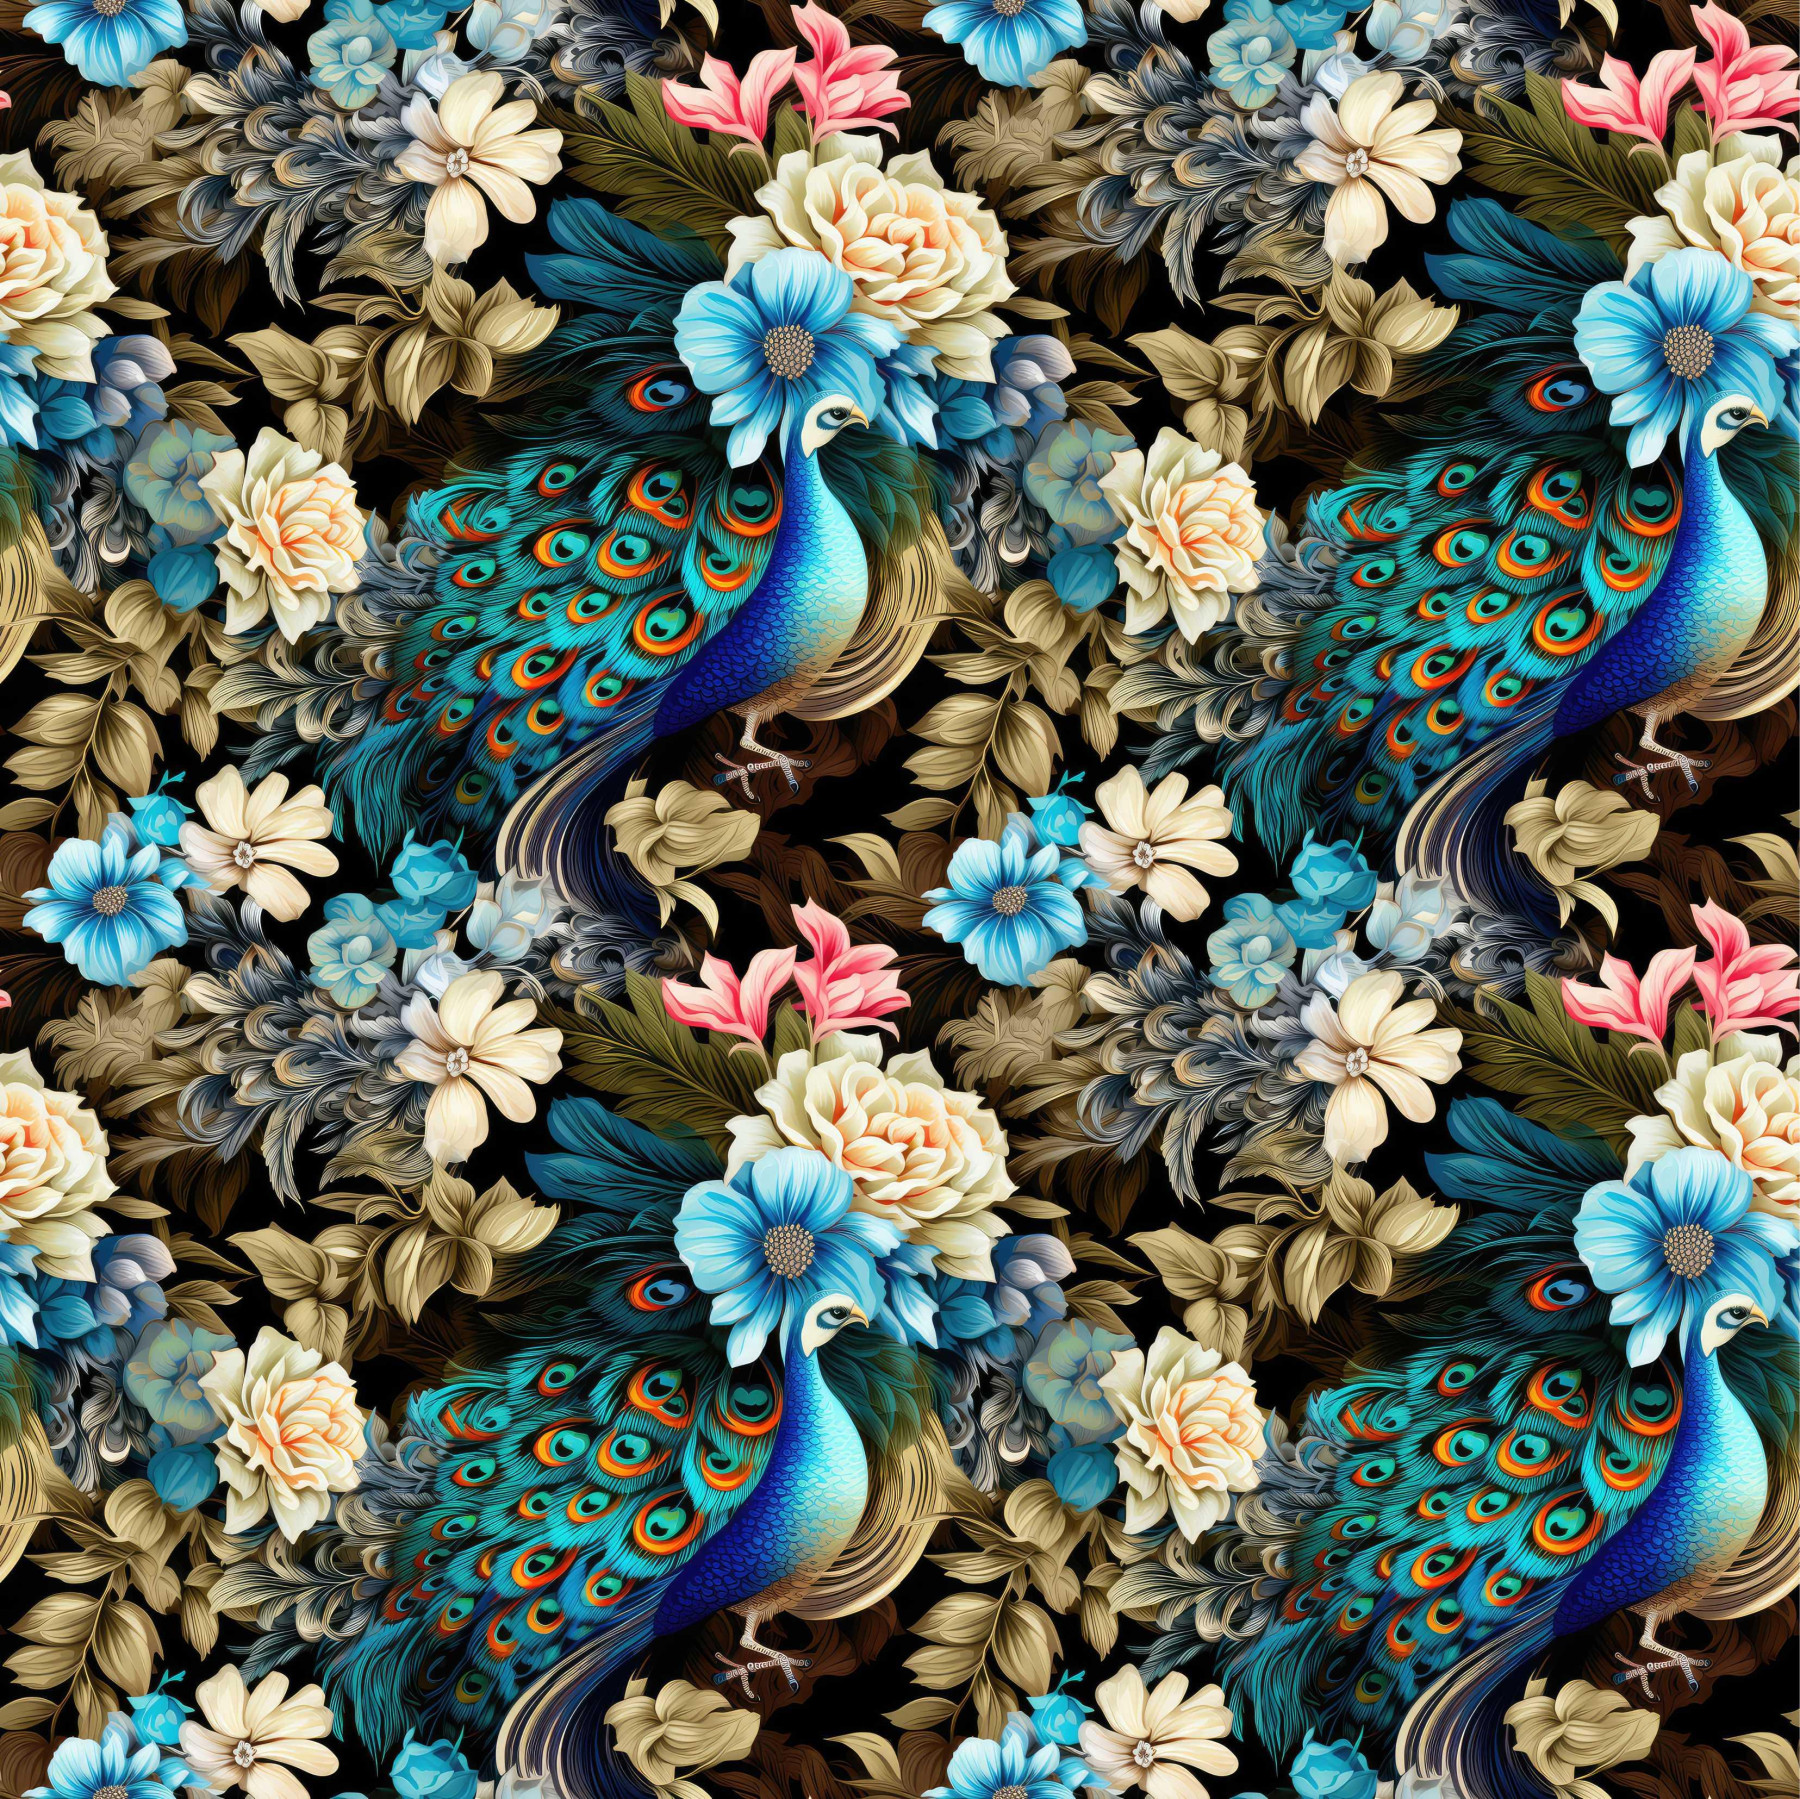 Botanical garden wz.3 - Woven Fabric for tablecloths